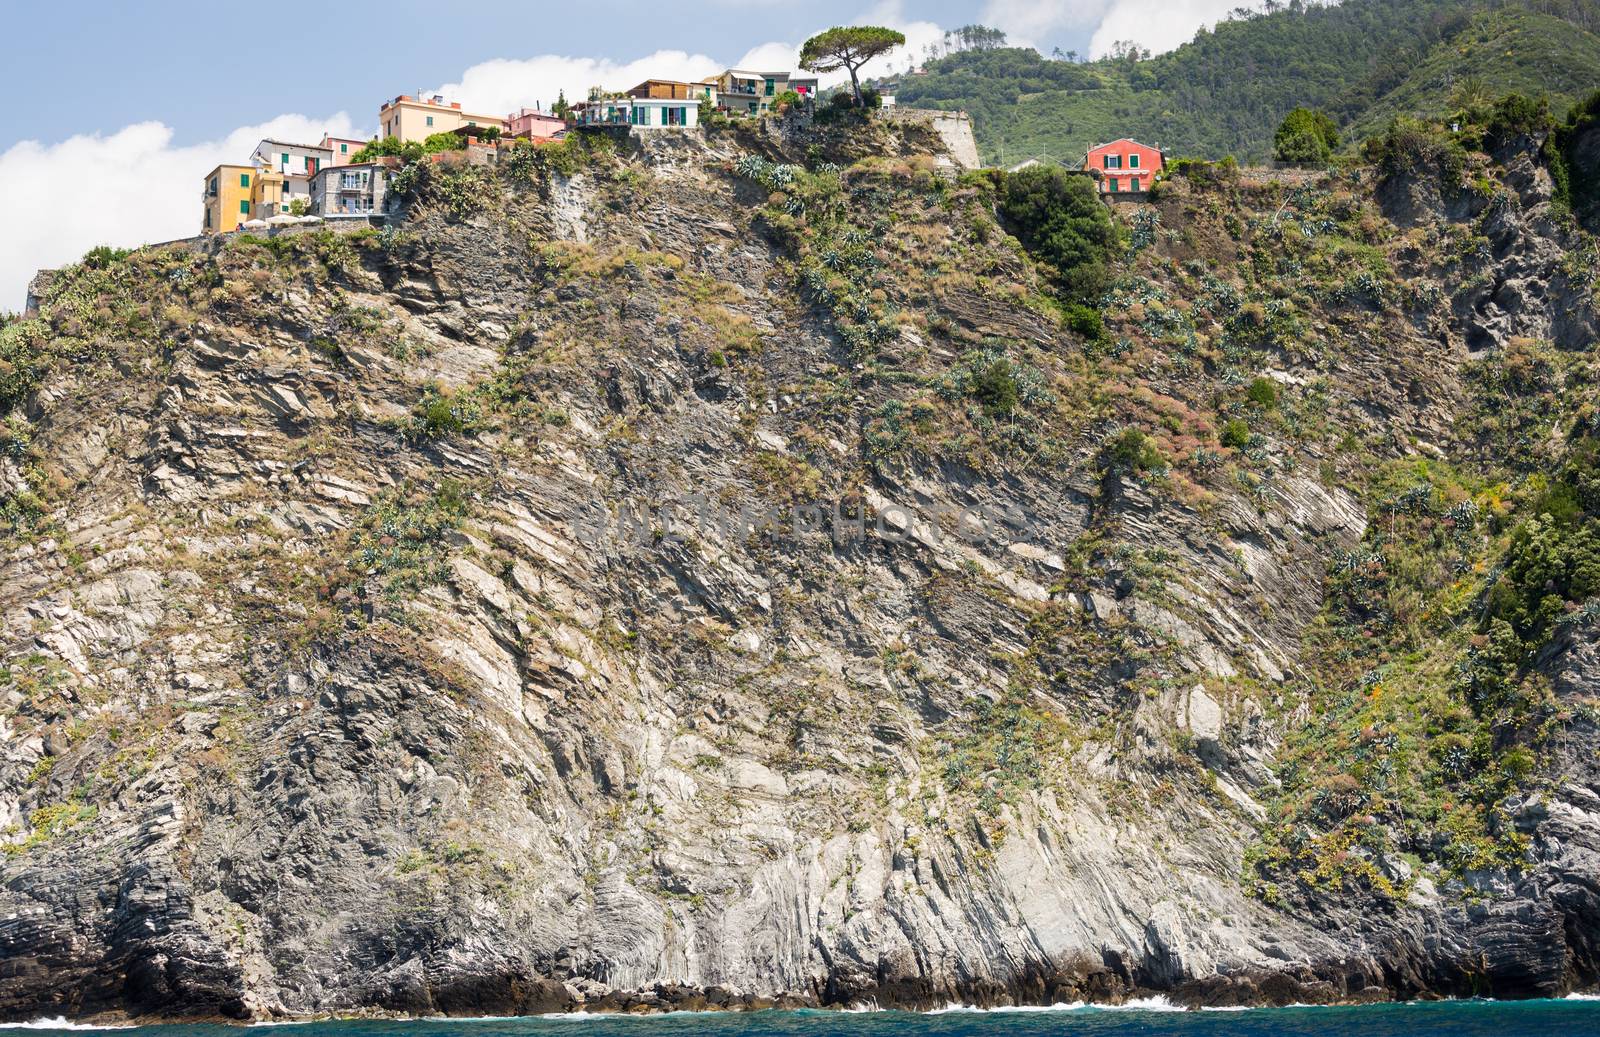 The village of Corniglia of the Cinque Terre by chrisukphoto